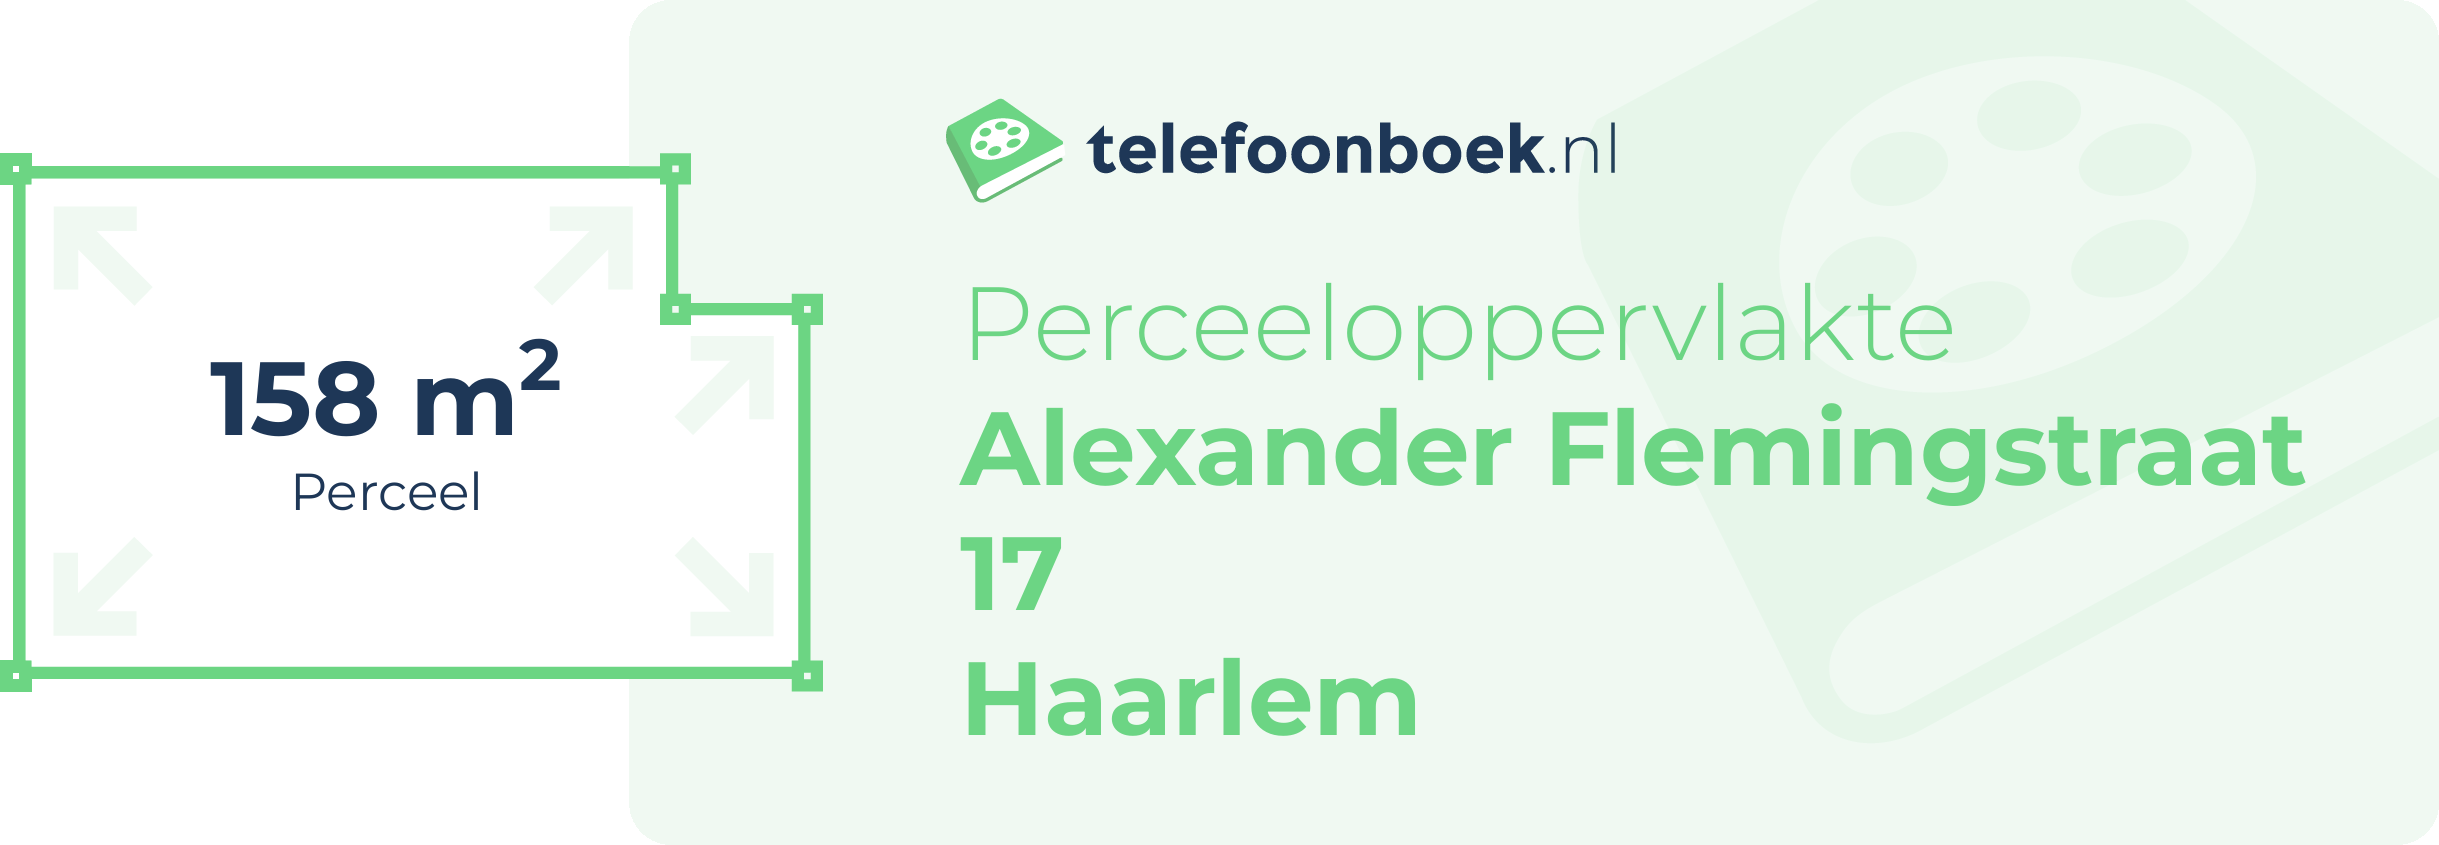 Perceeloppervlakte Alexander Flemingstraat 17 Haarlem